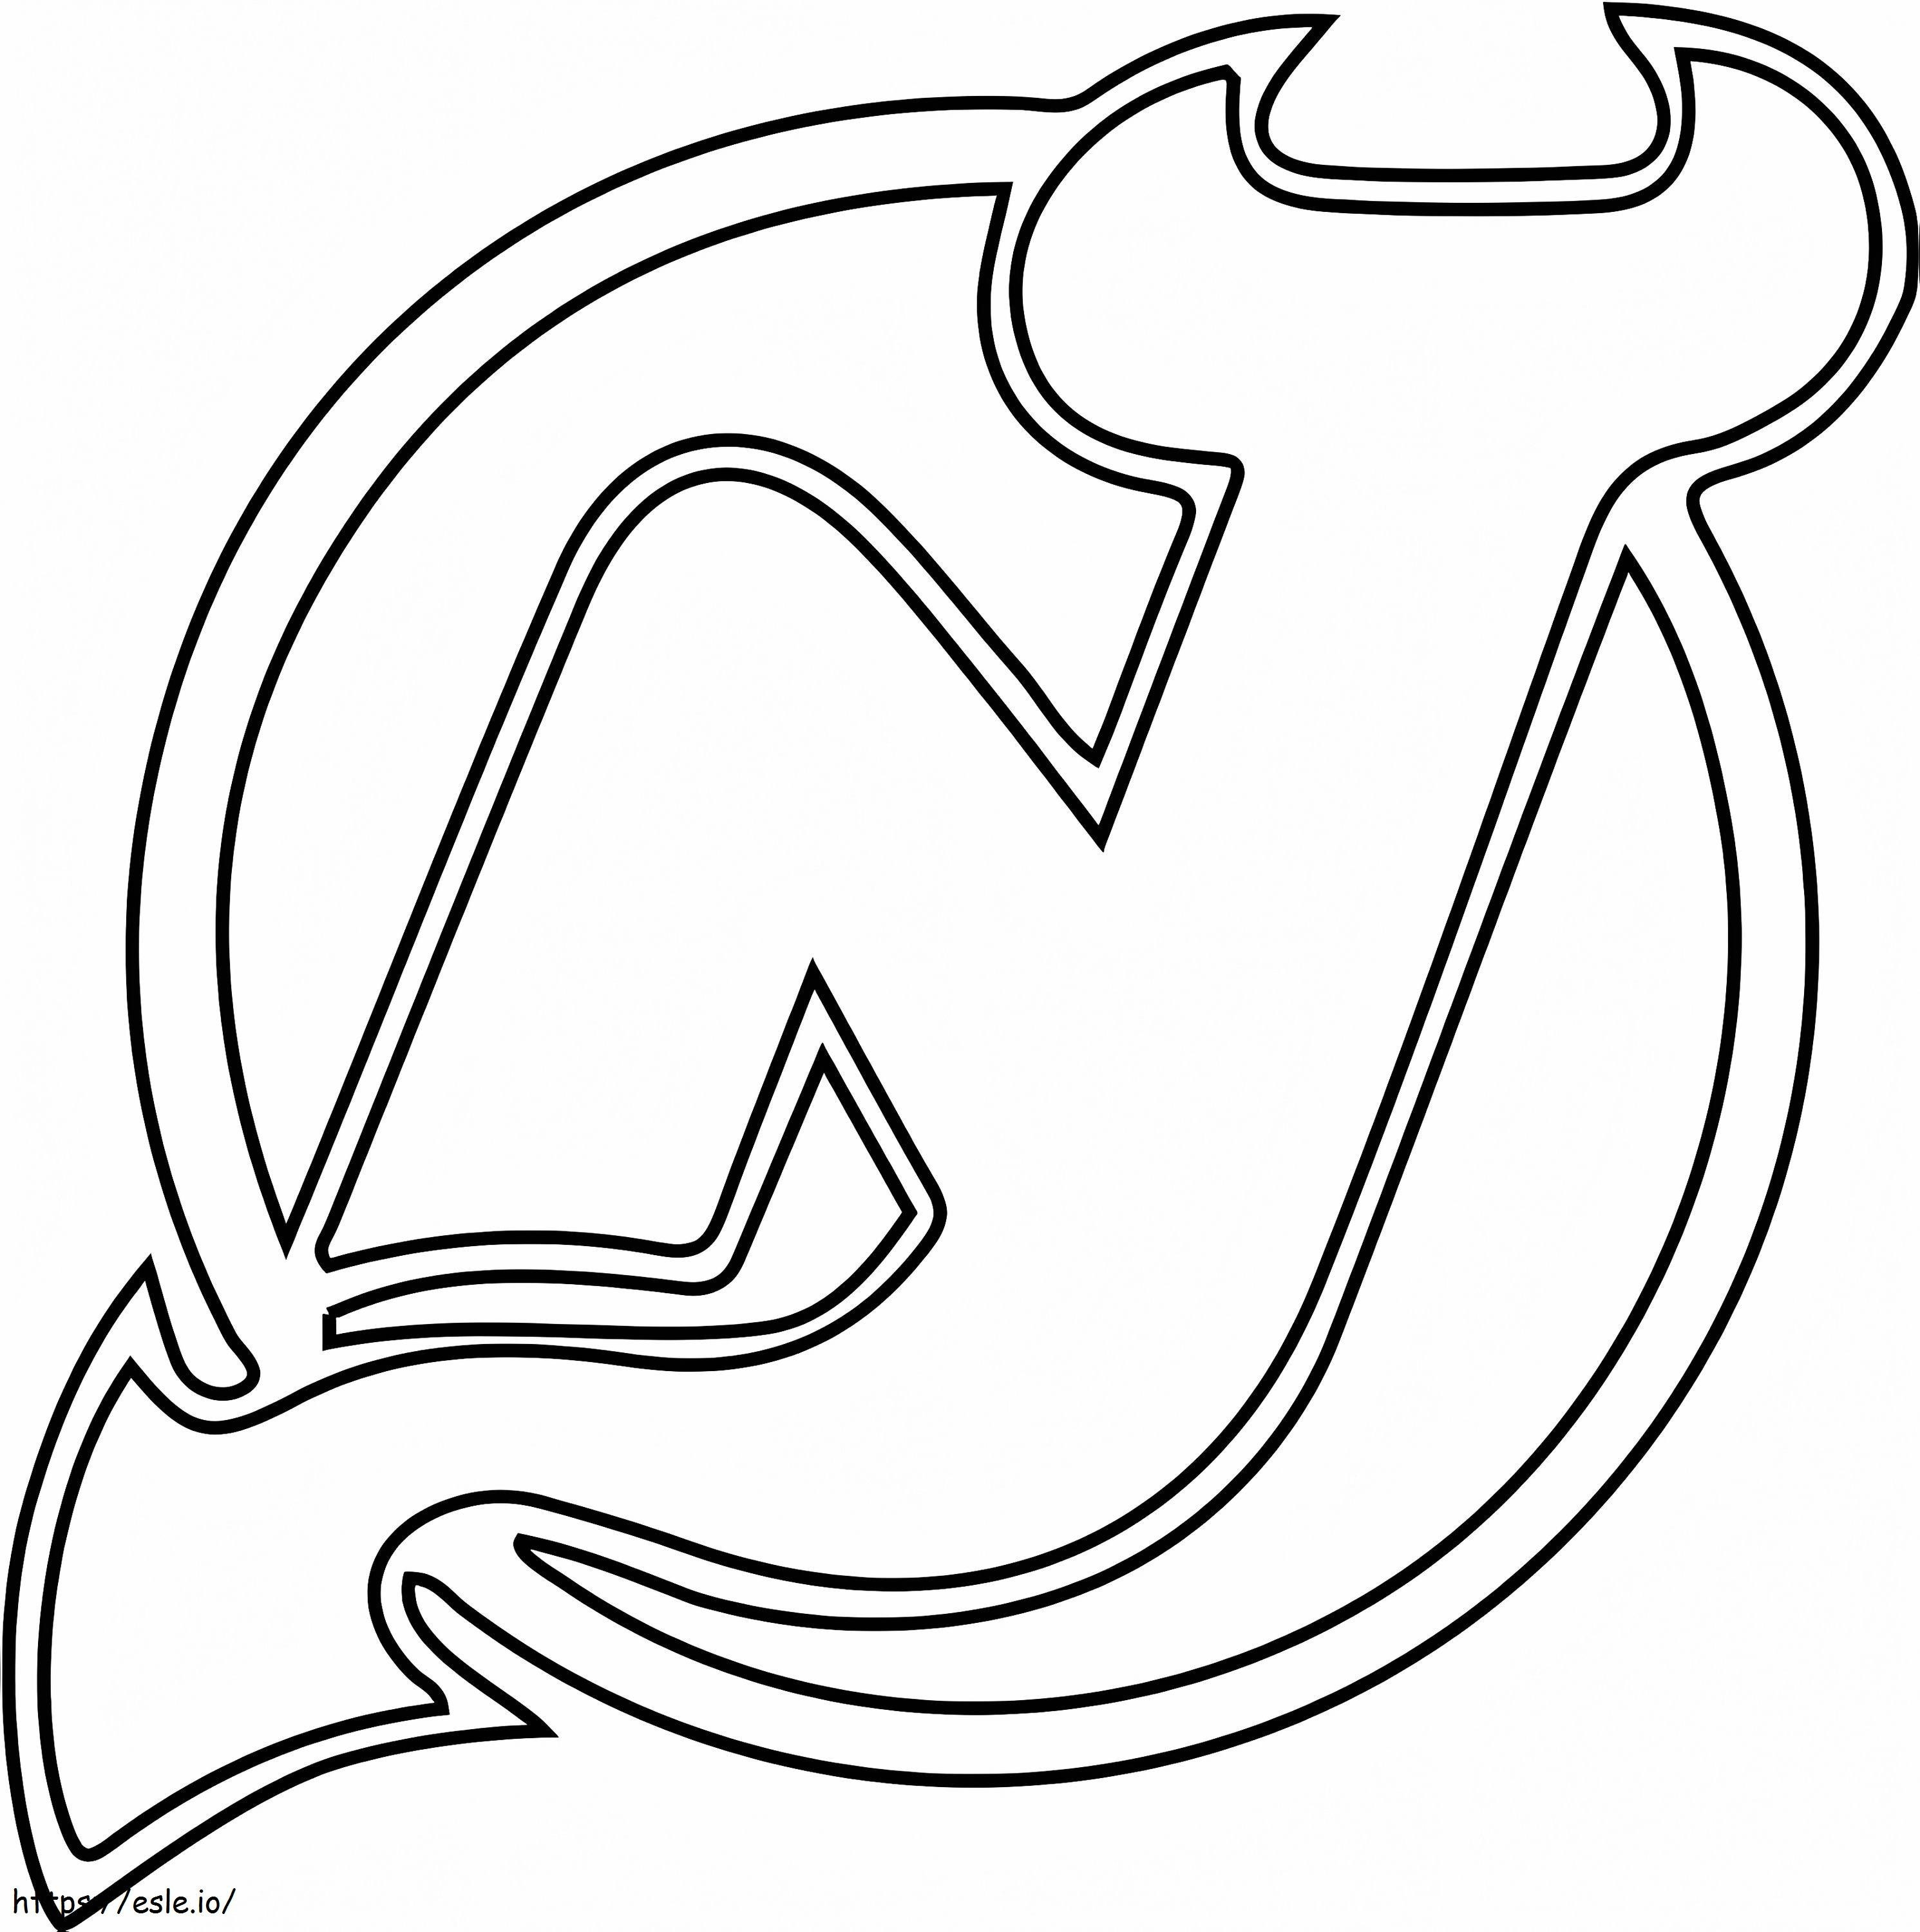 Logo dei diavoli del New Jersey da colorare